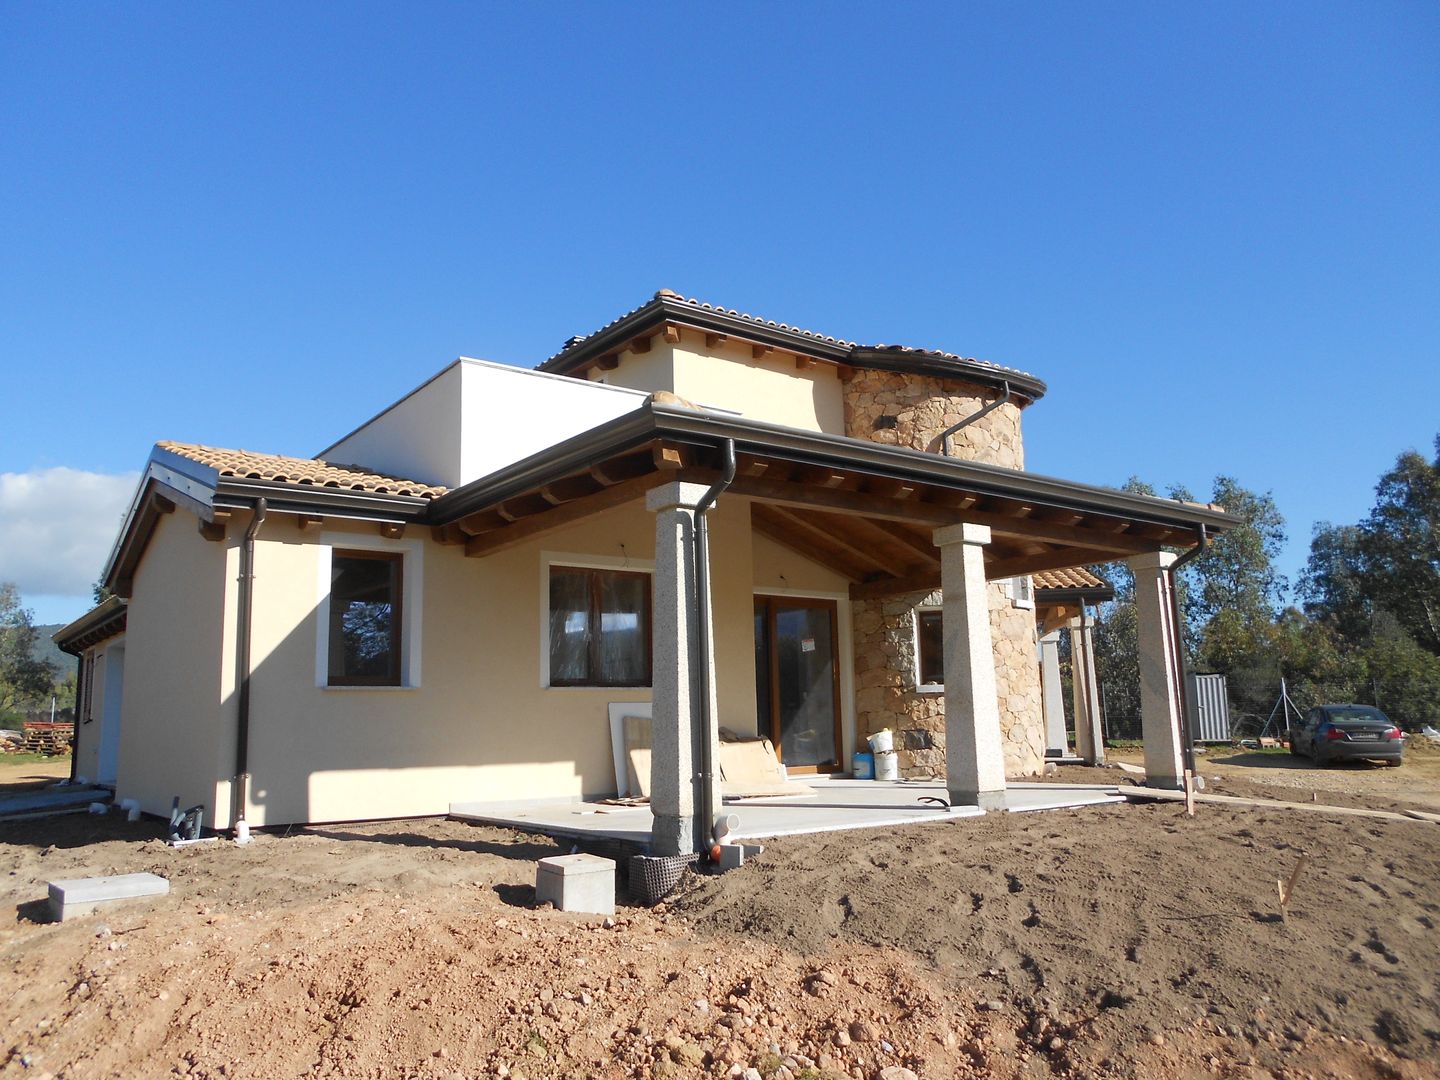 Realizzazione casa in bioedilizia costruita in legno con tecnologia X-lam, SOGEDI costruzioni SOGEDI costruzioni منازل